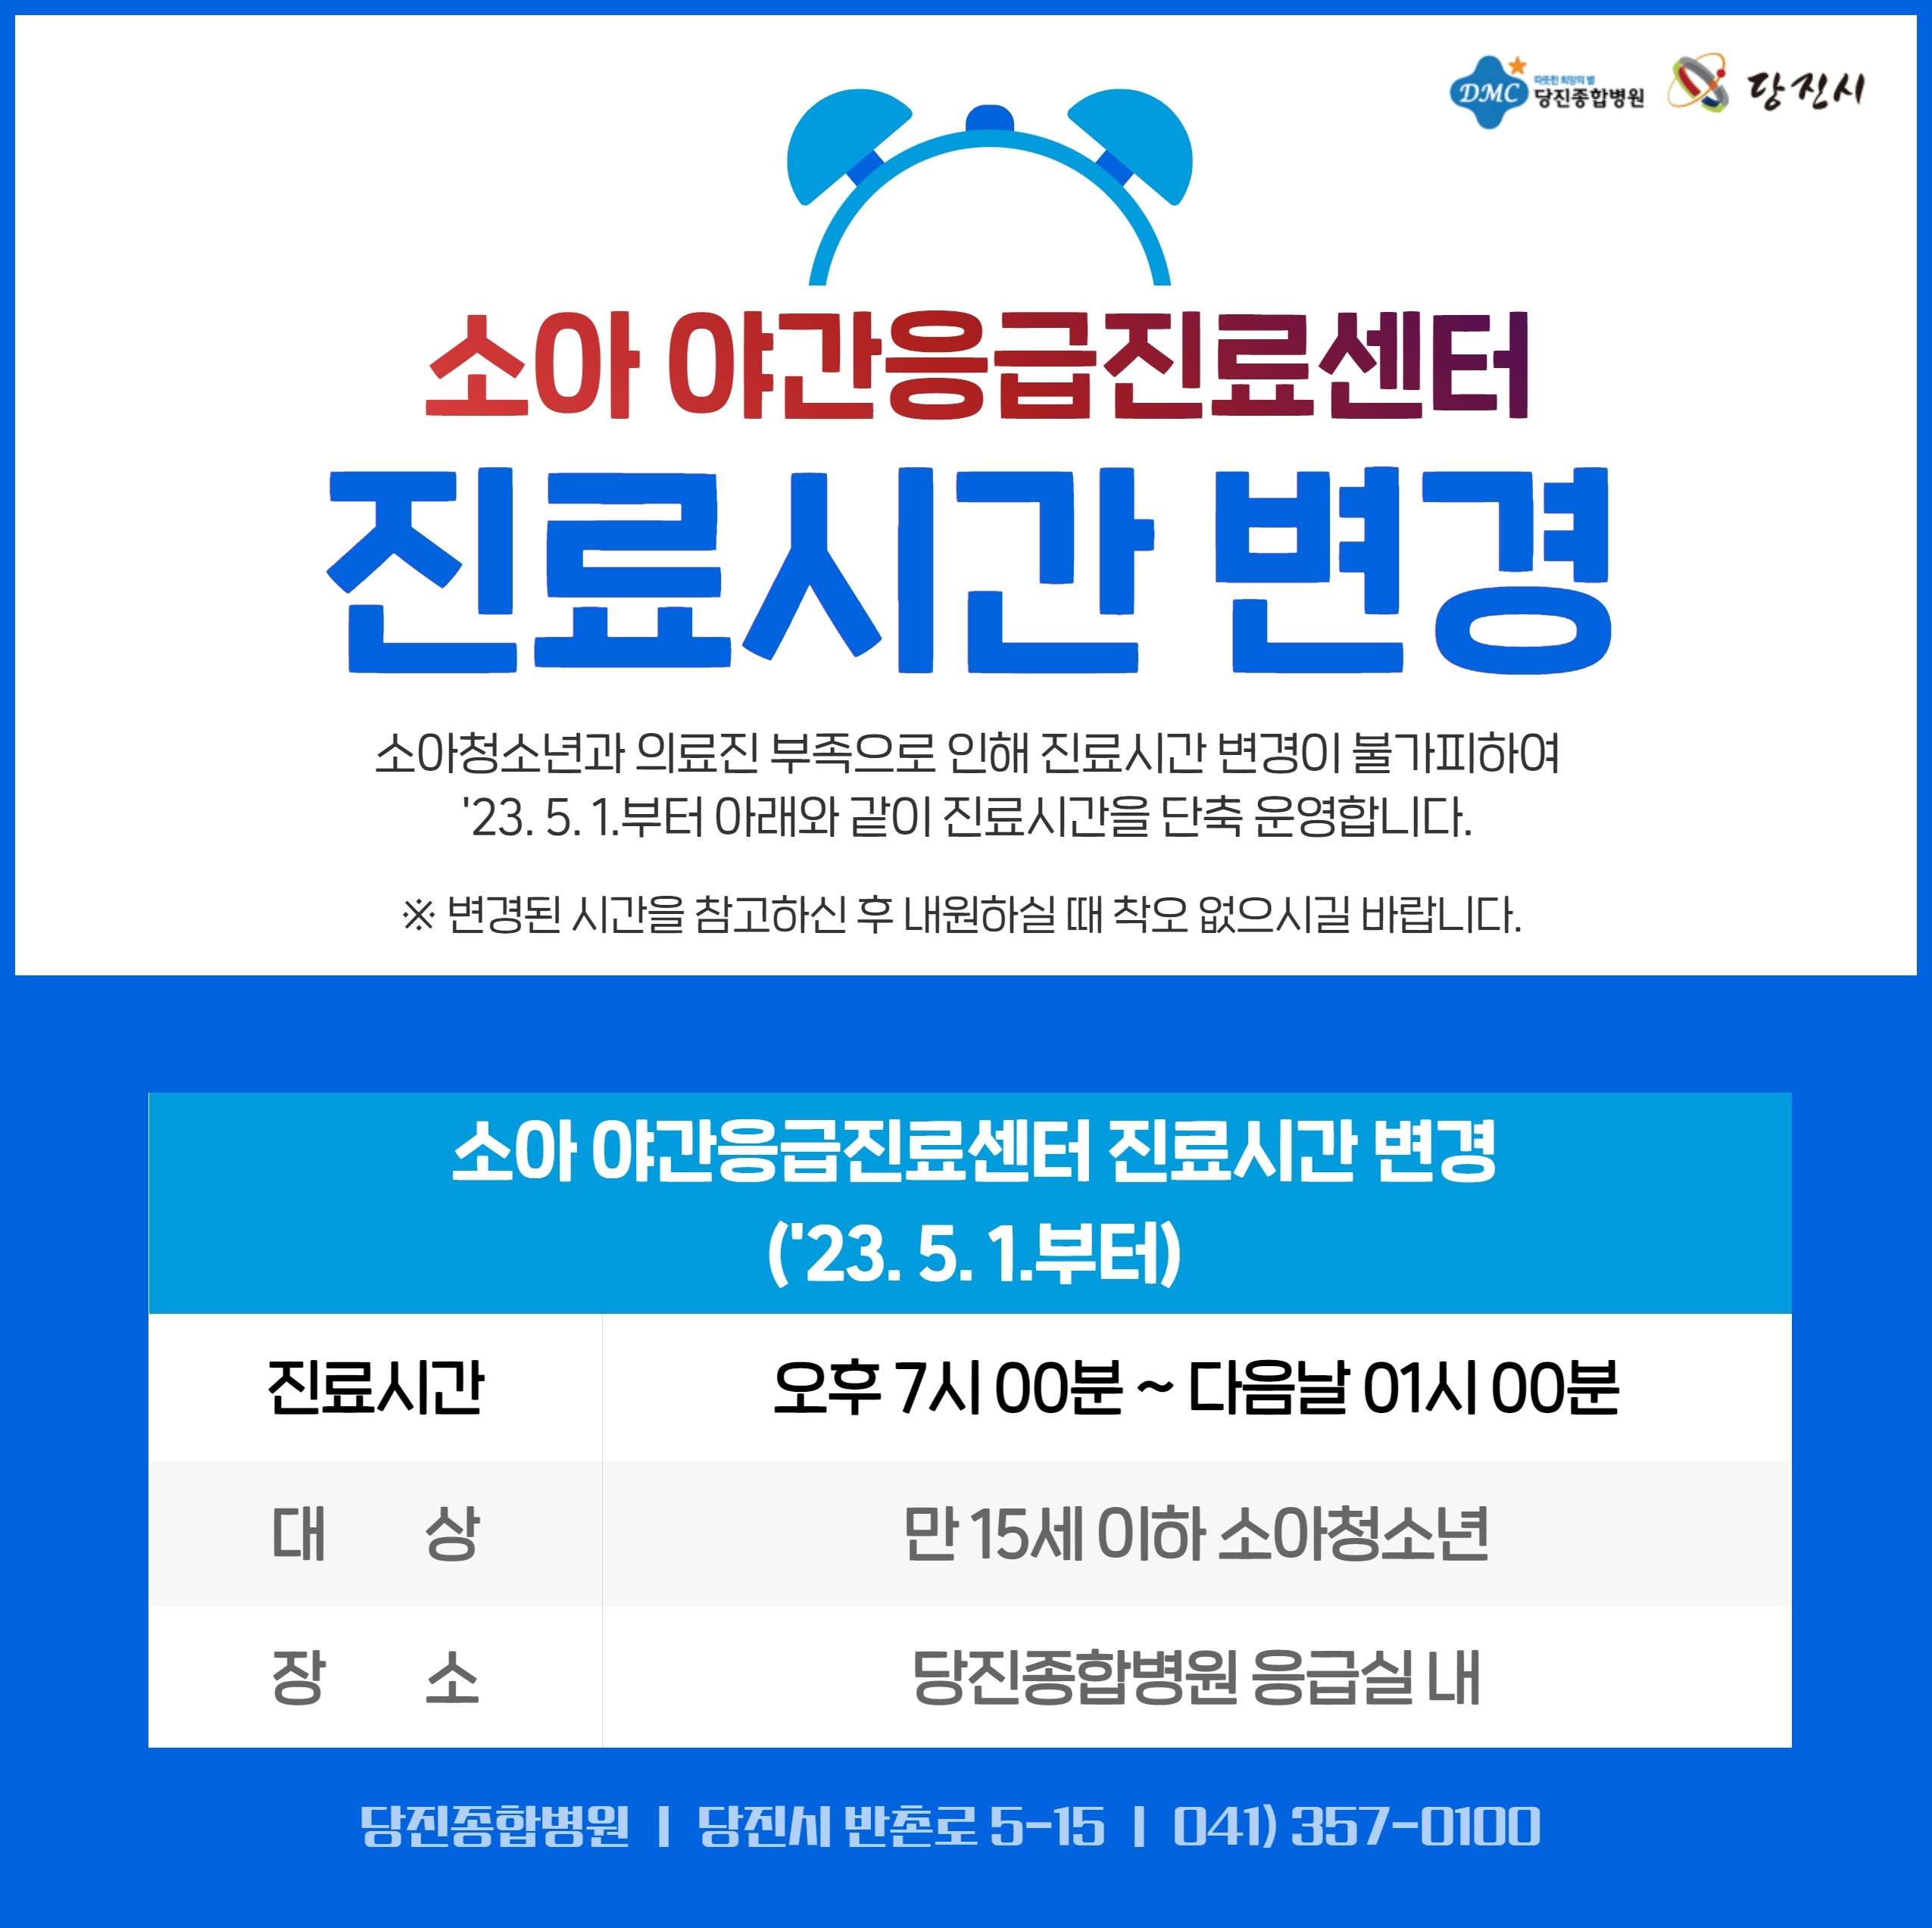 소아 야간응급진료센터 진료시간 변경